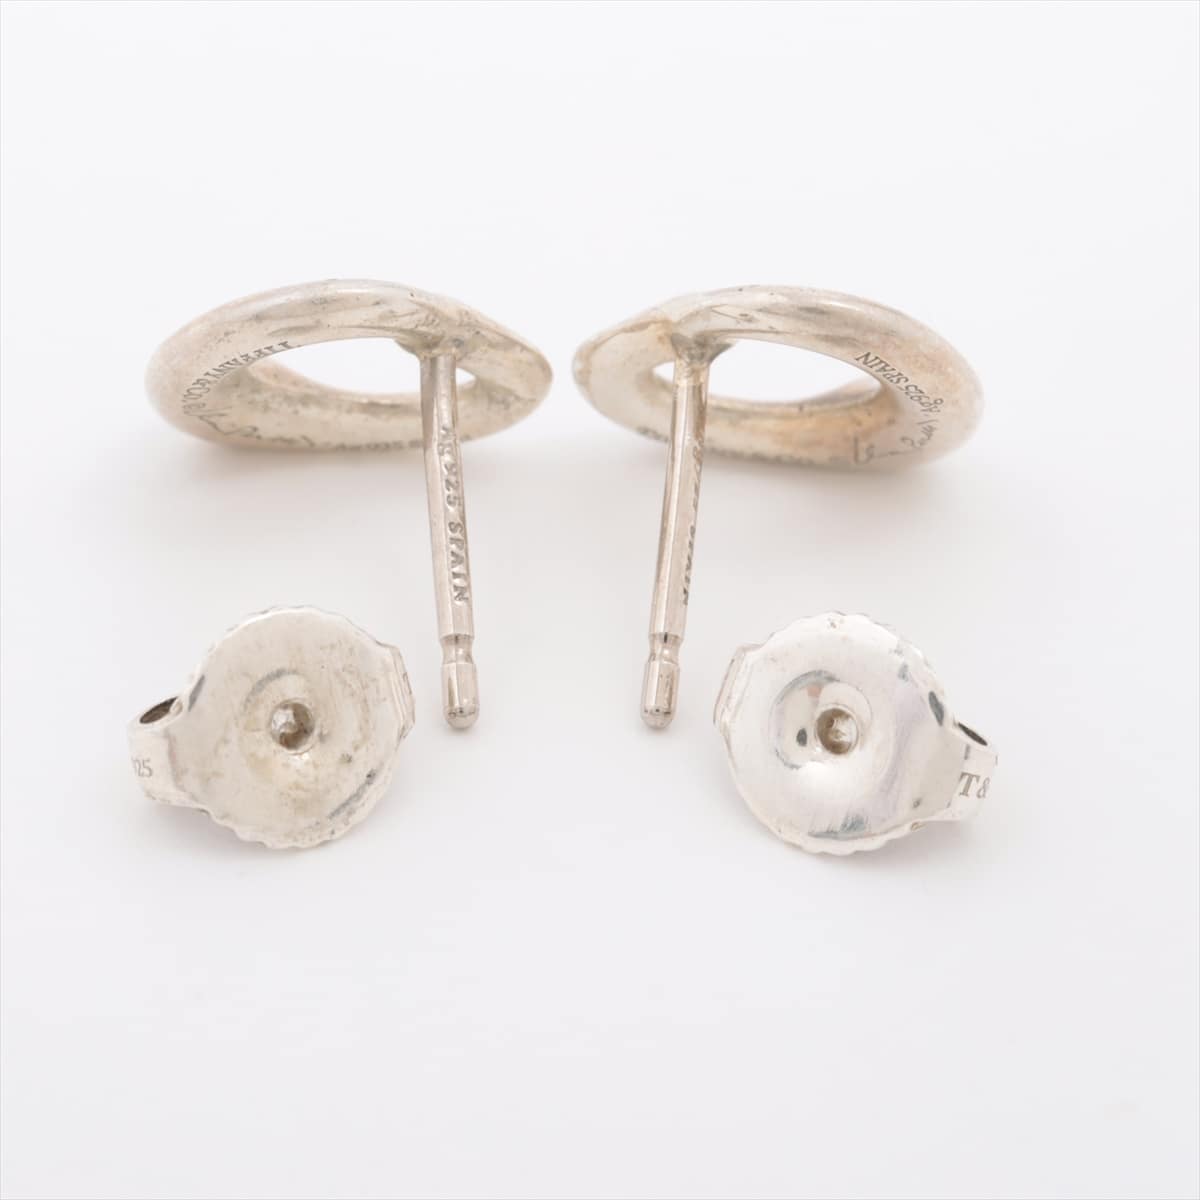 Tiffany Open Heart Piercing jewelry (for both ears) 925 2.0g Silver